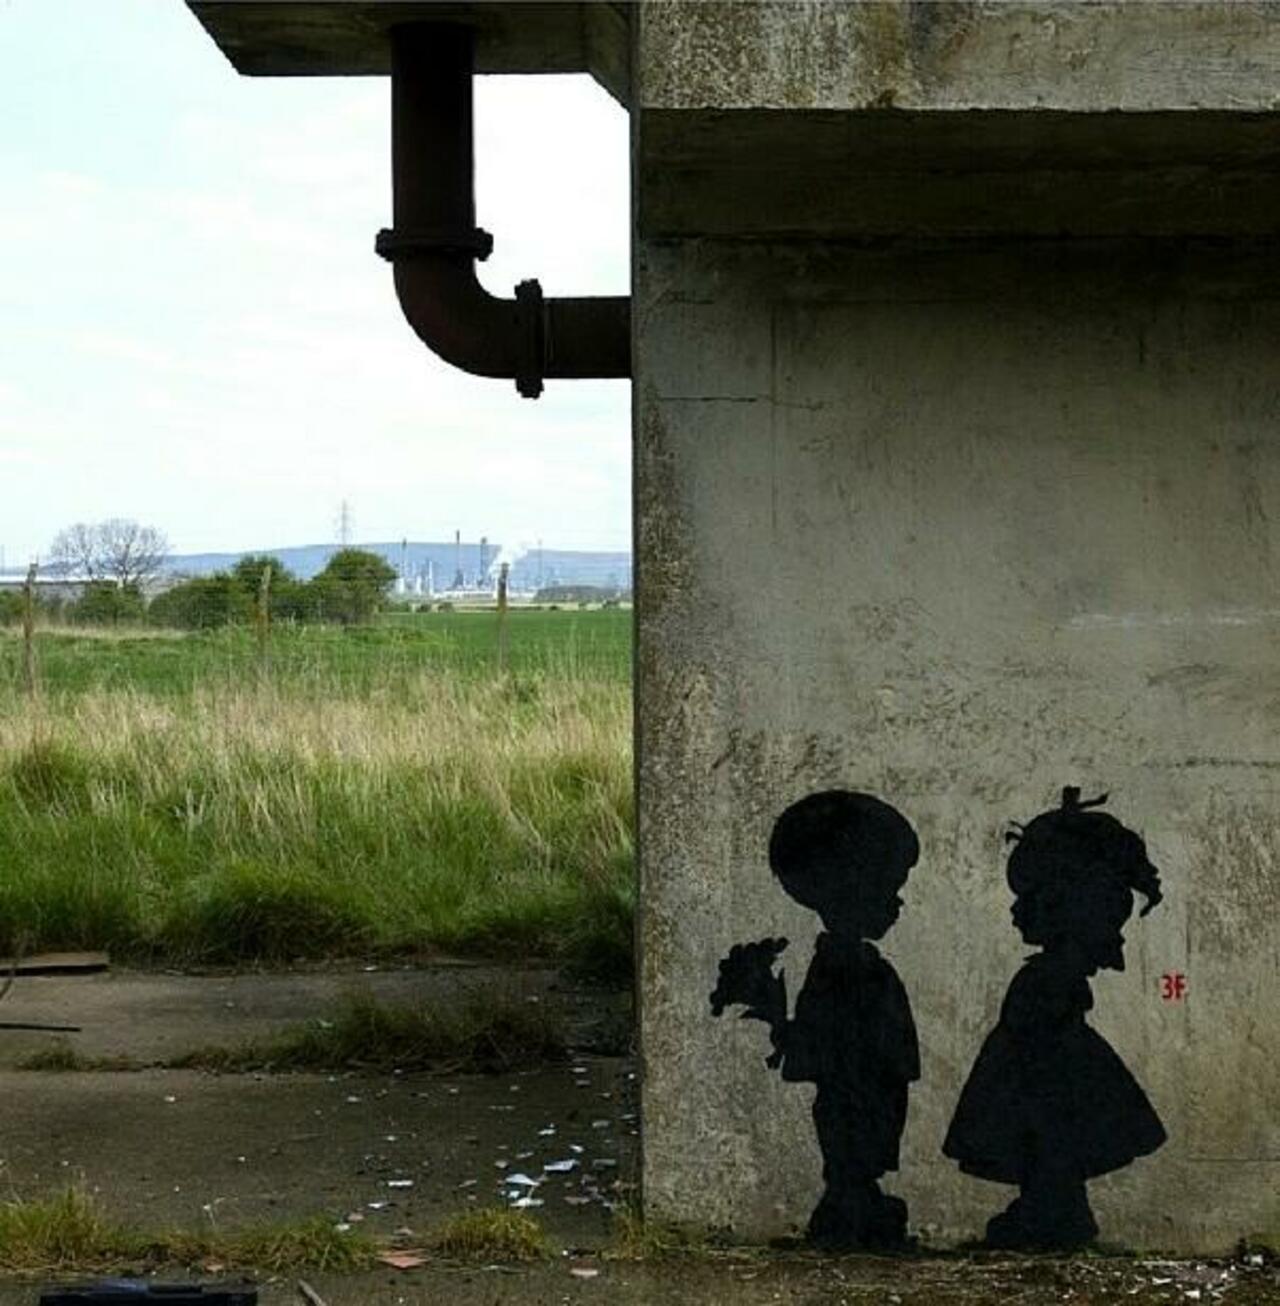 “@GoogleStreetArt: Found love in a hopeless place!

Street Art by 3fountains 

#art #mural #graffiti #streetart http://t.co/8ZJVJw8QzN”